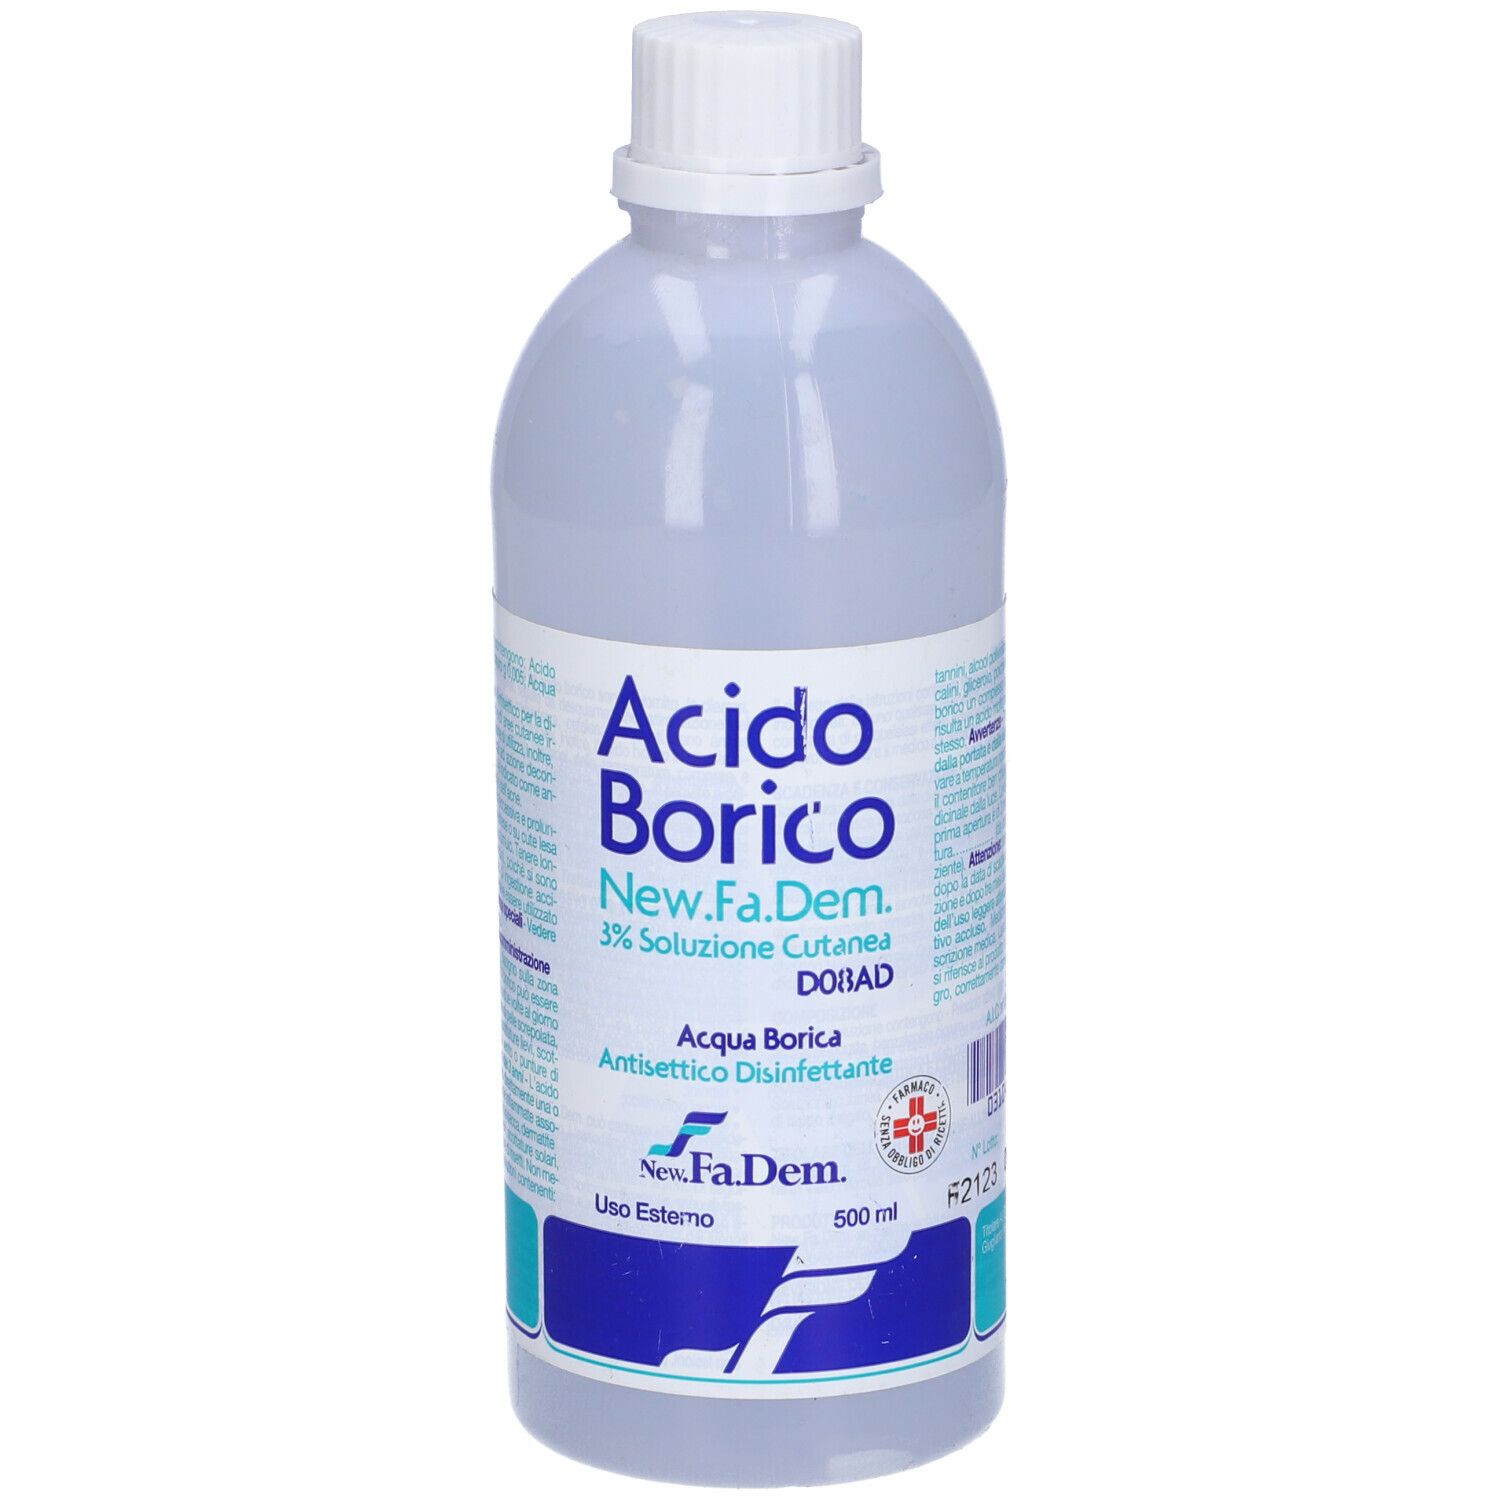 Acido Borico soluzione cutanea 3% 500ml